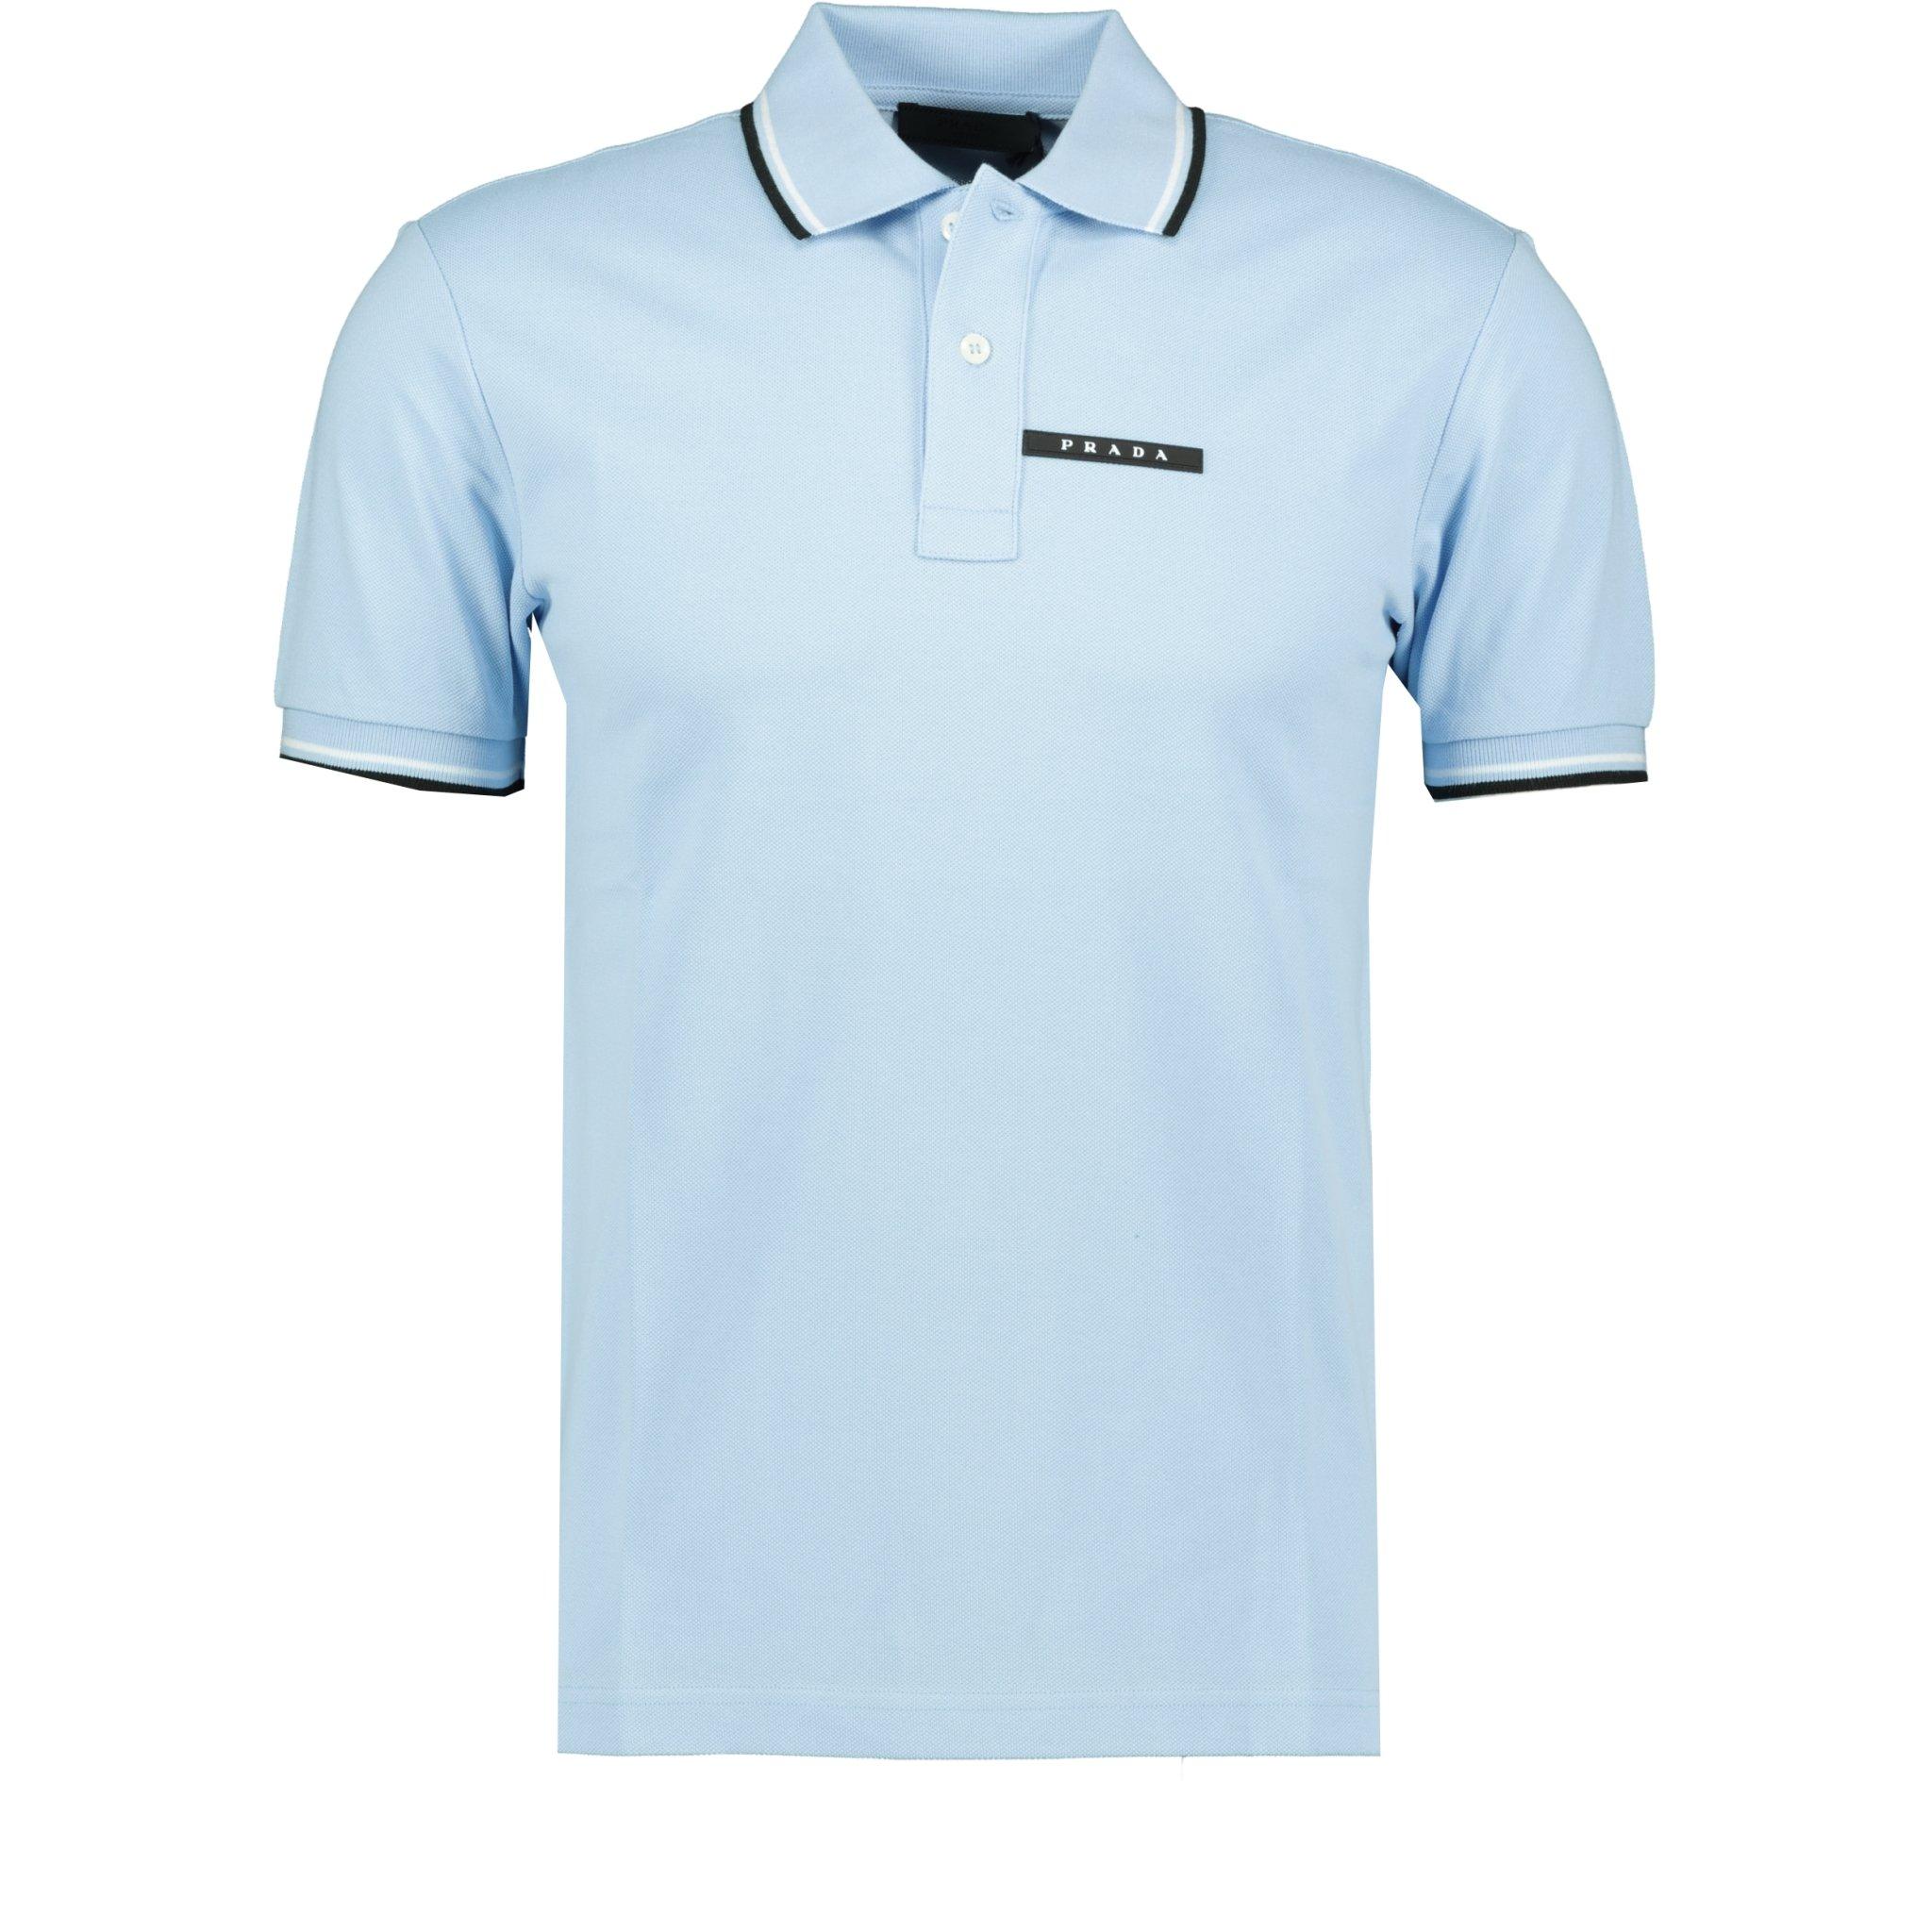 Prada Men's Embroidered Shirt (Sky Blue)